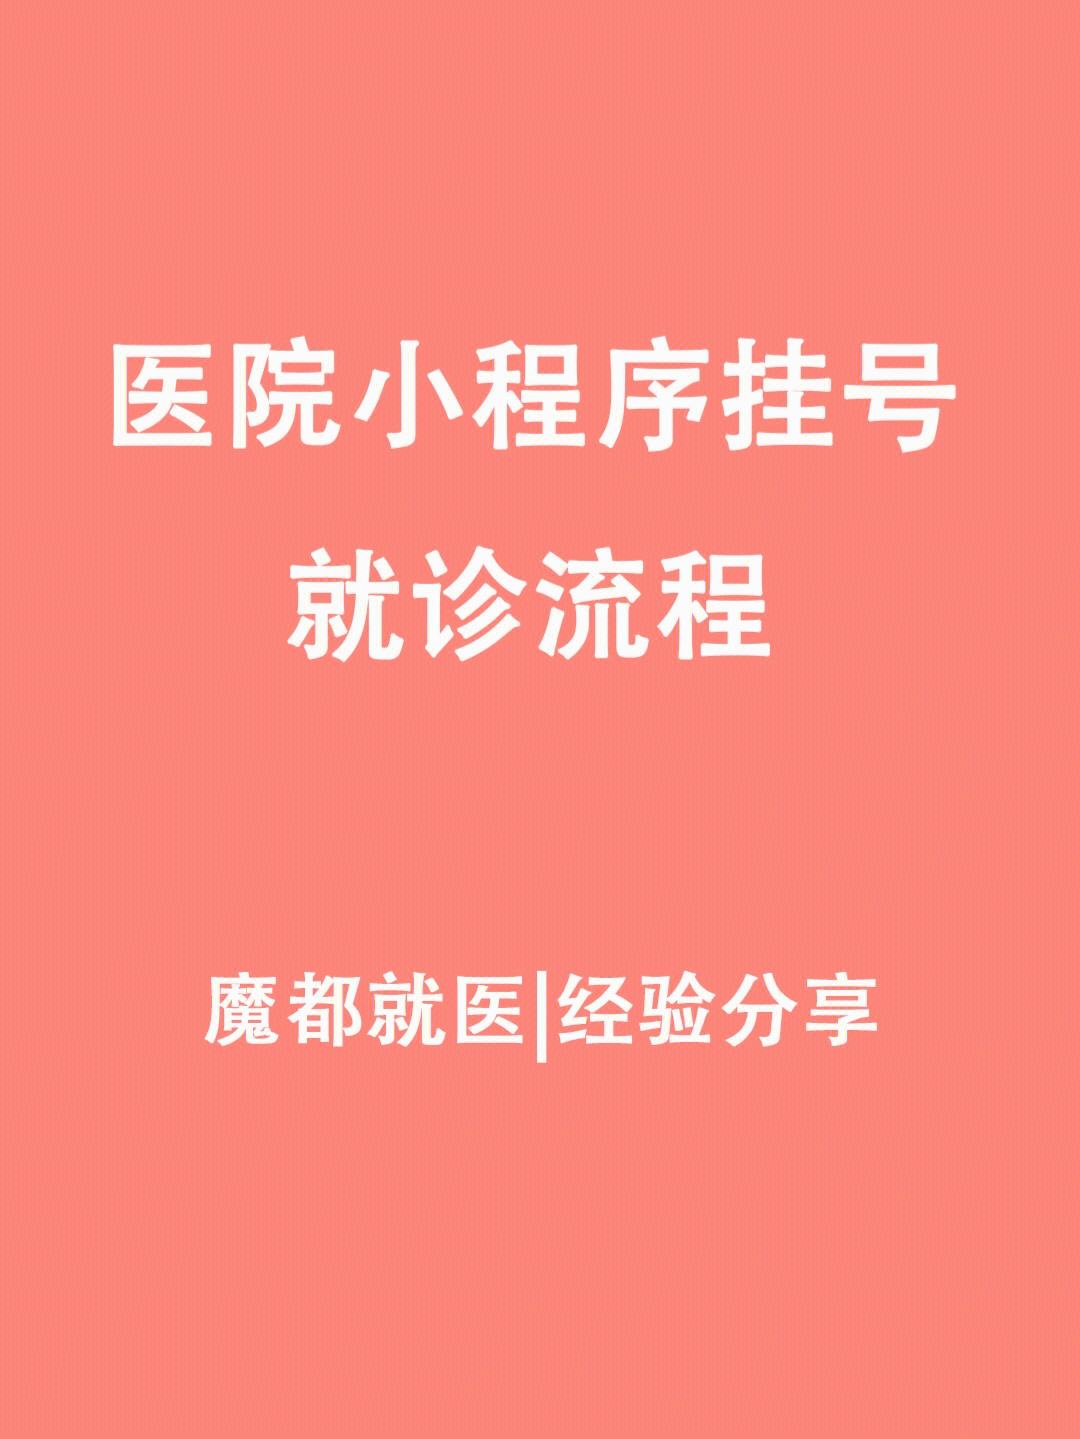 包含上海八五医院医院黄牛挂号，京医指导就医分享的词条